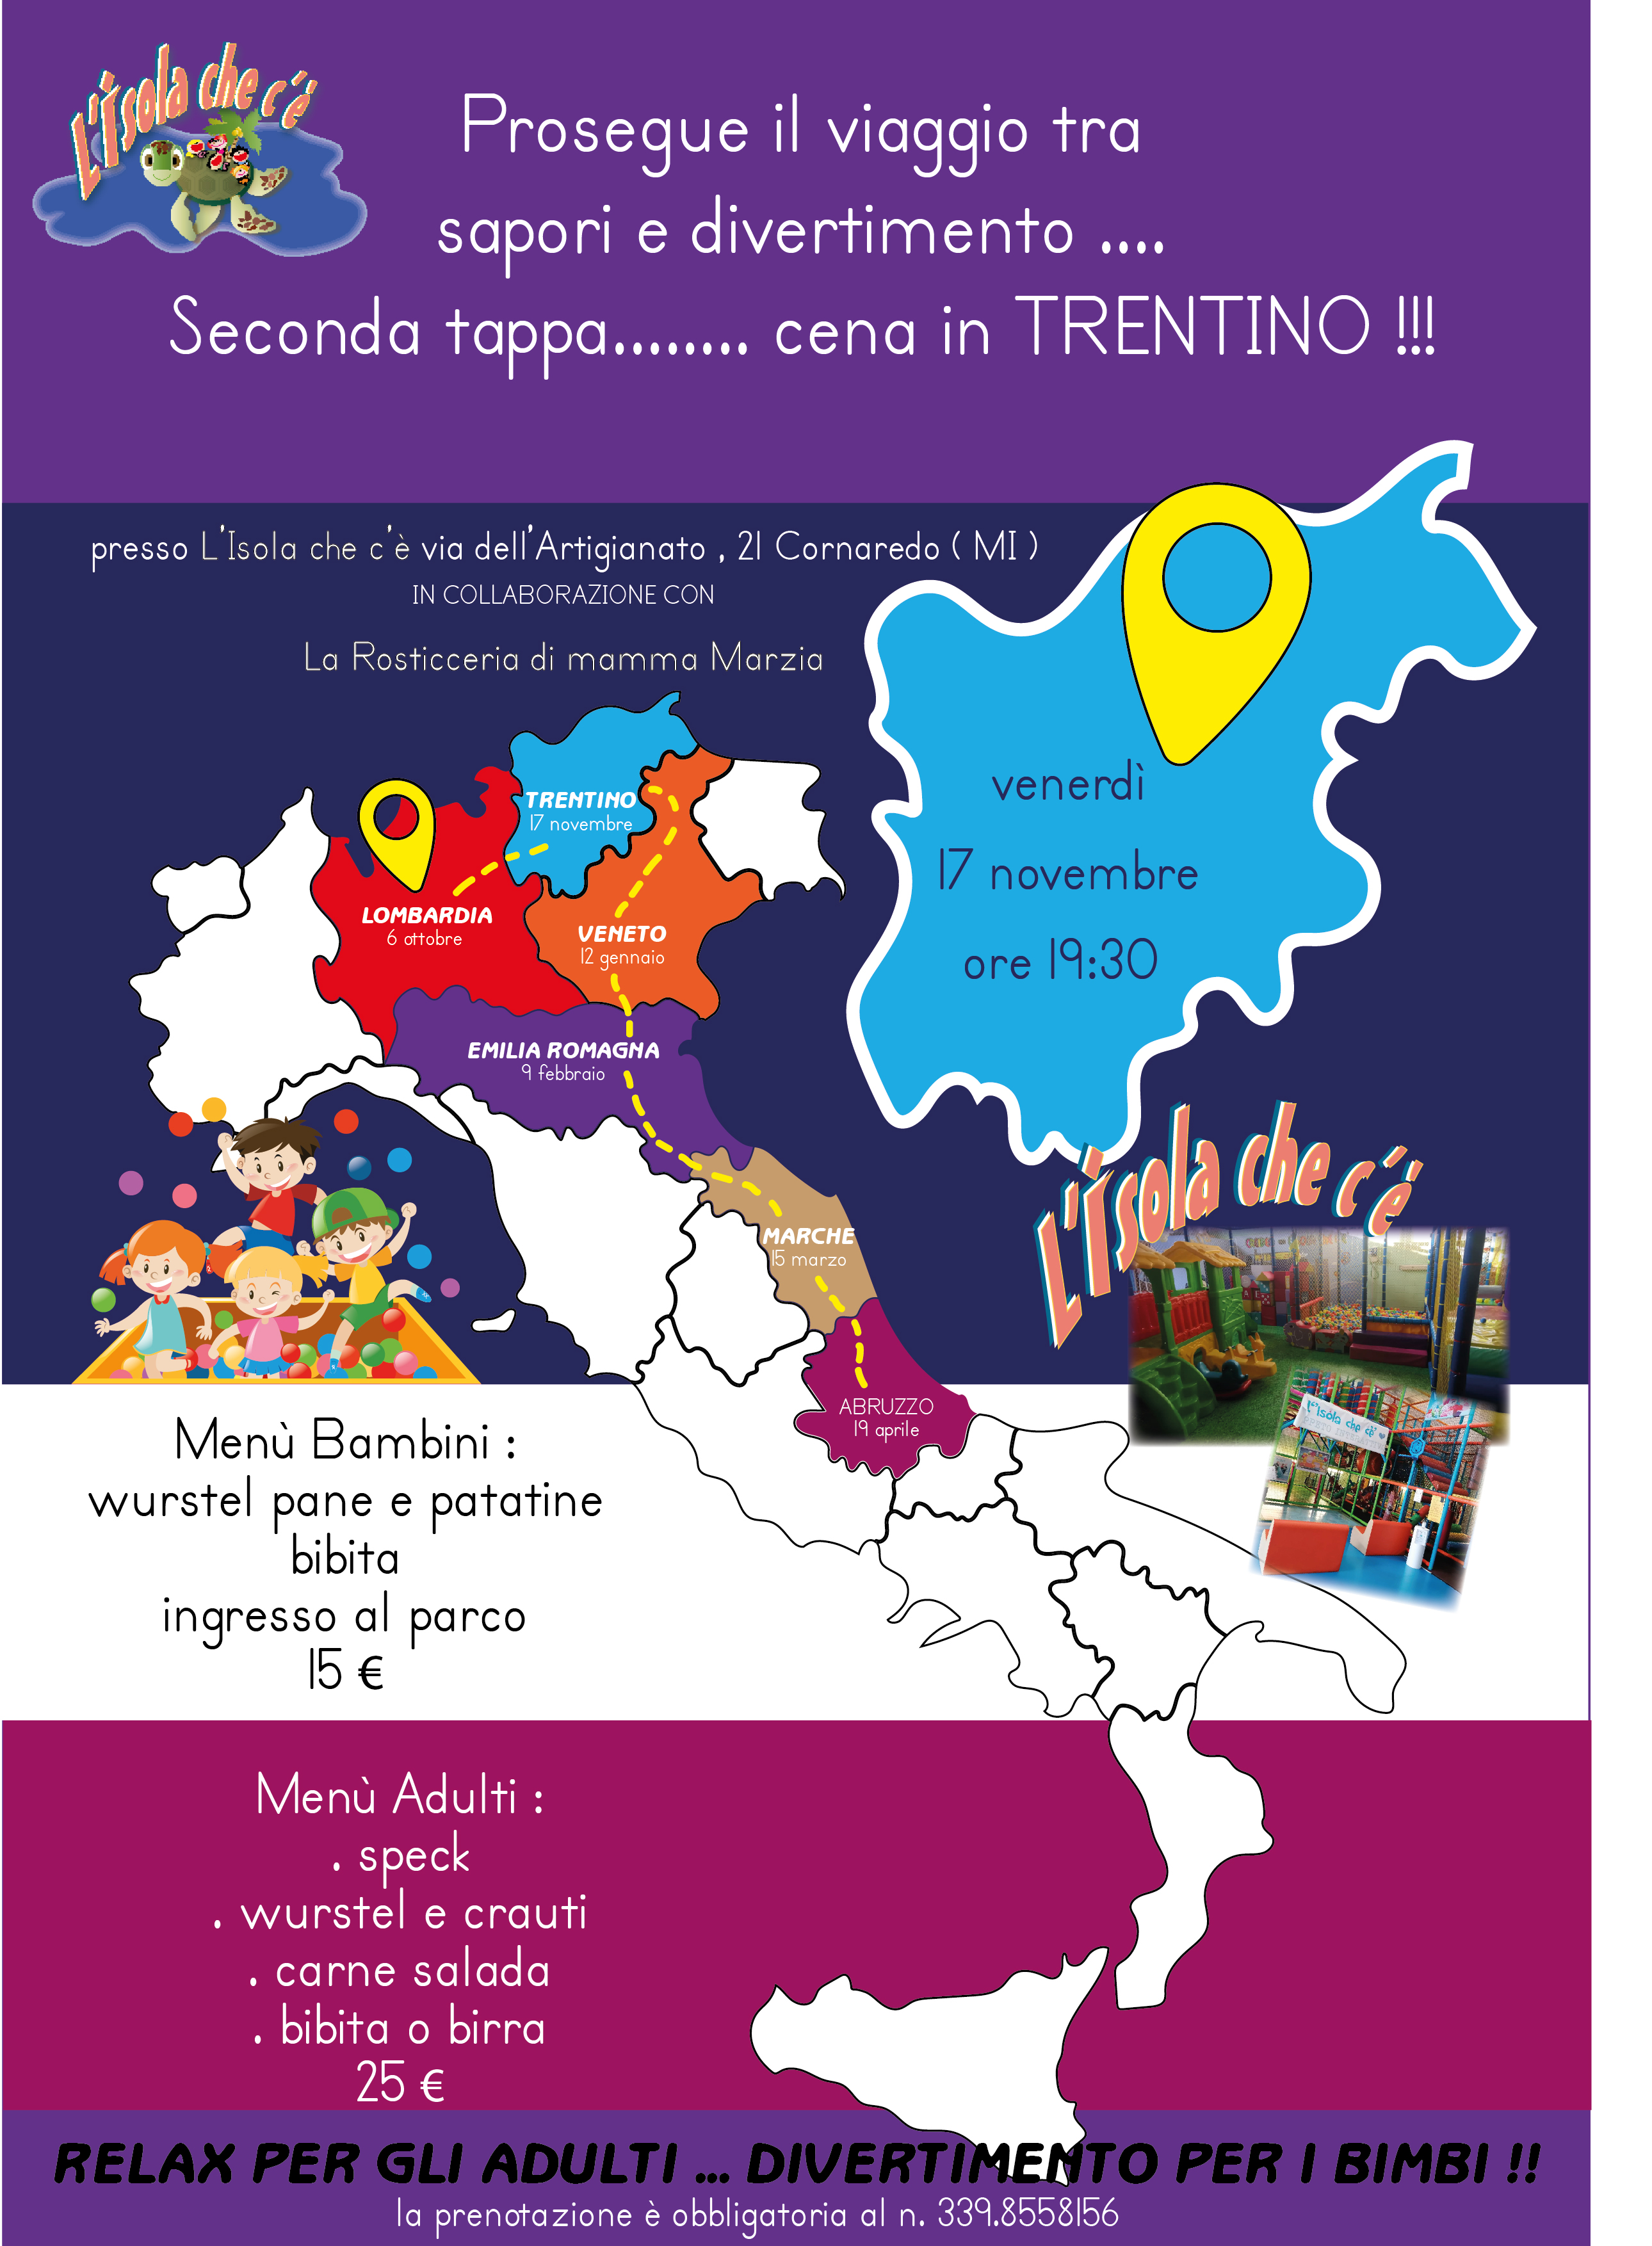 Cena in Trentino